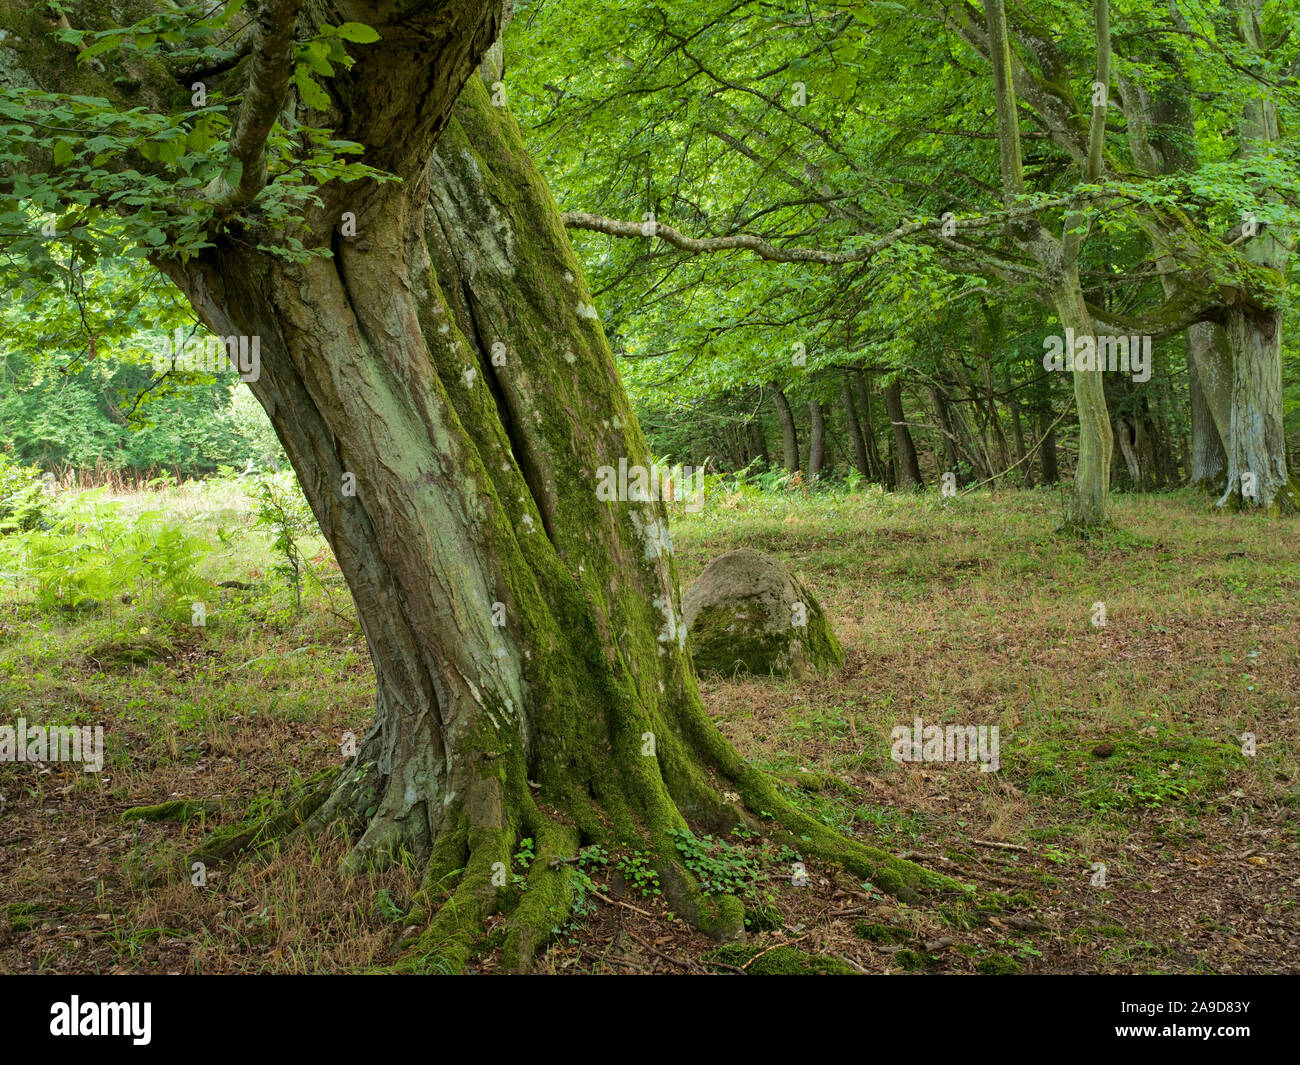 Sweden, Skane, Kivik, Stenshuvud National Park, old hornbeam tree trunk Stock Photo